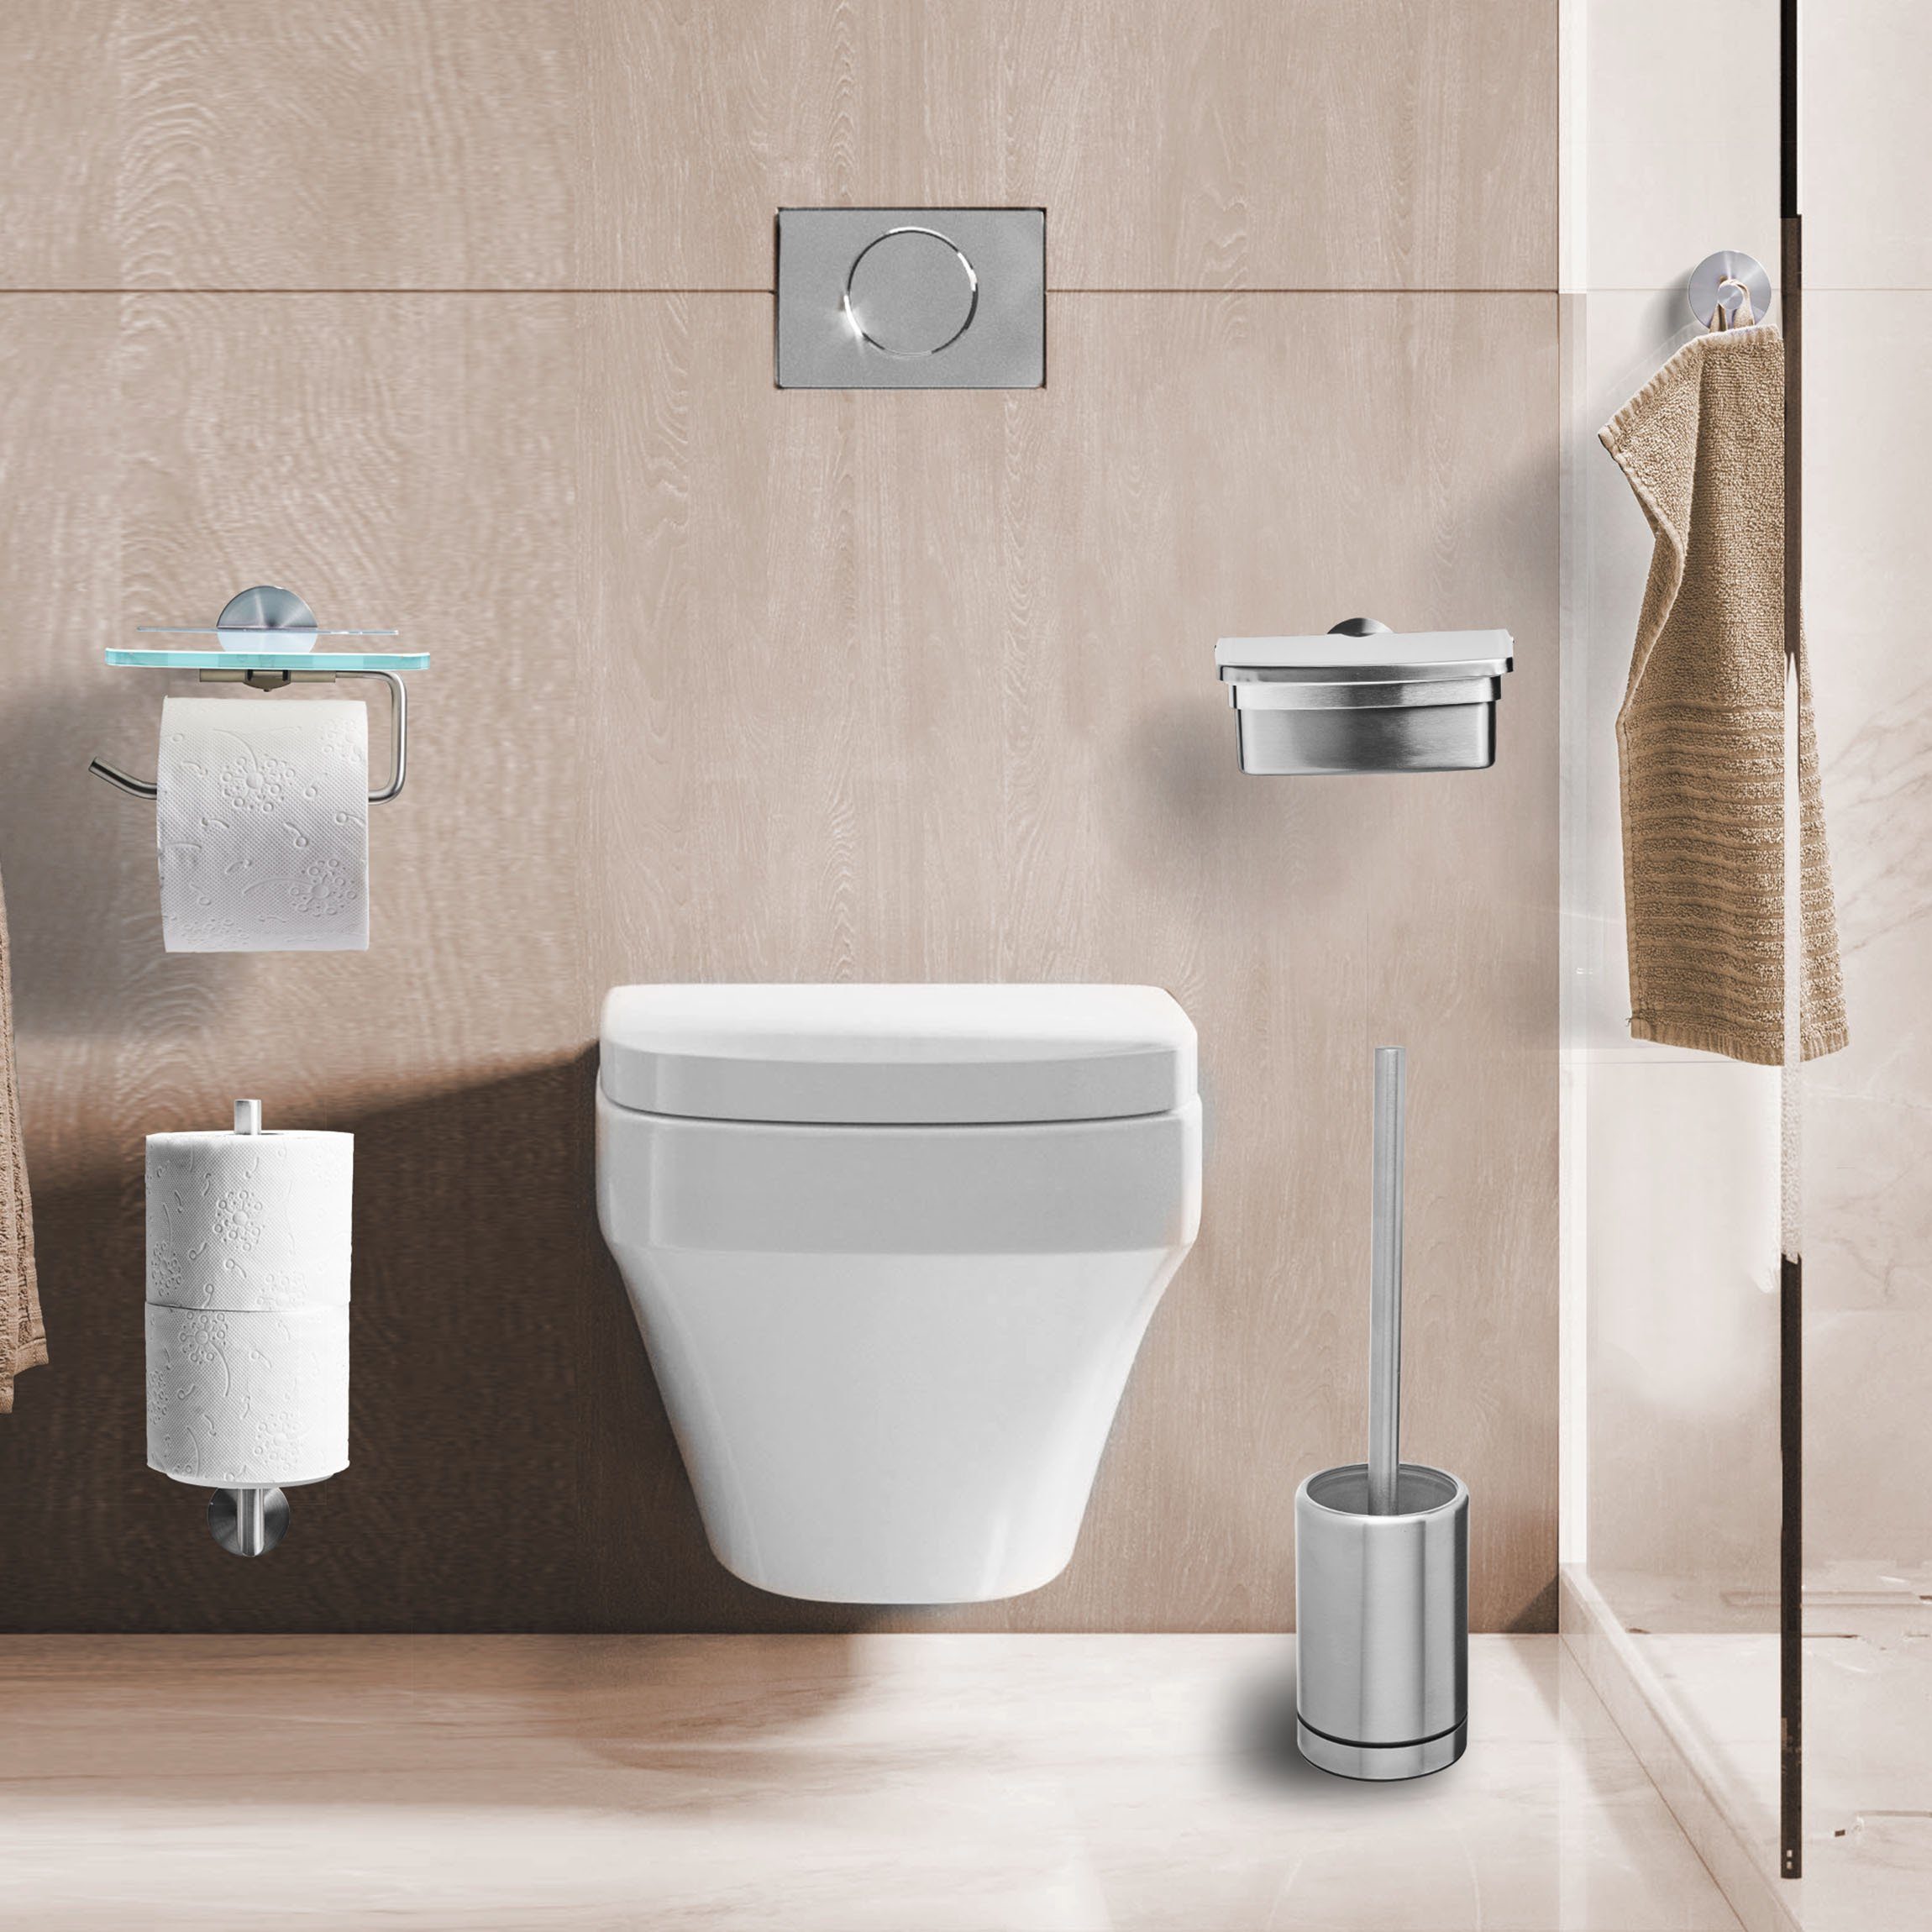 Silber WC-Bürste Luxus belüftet WC-Reinigungsbürste Toilettenbürste Bath Amare